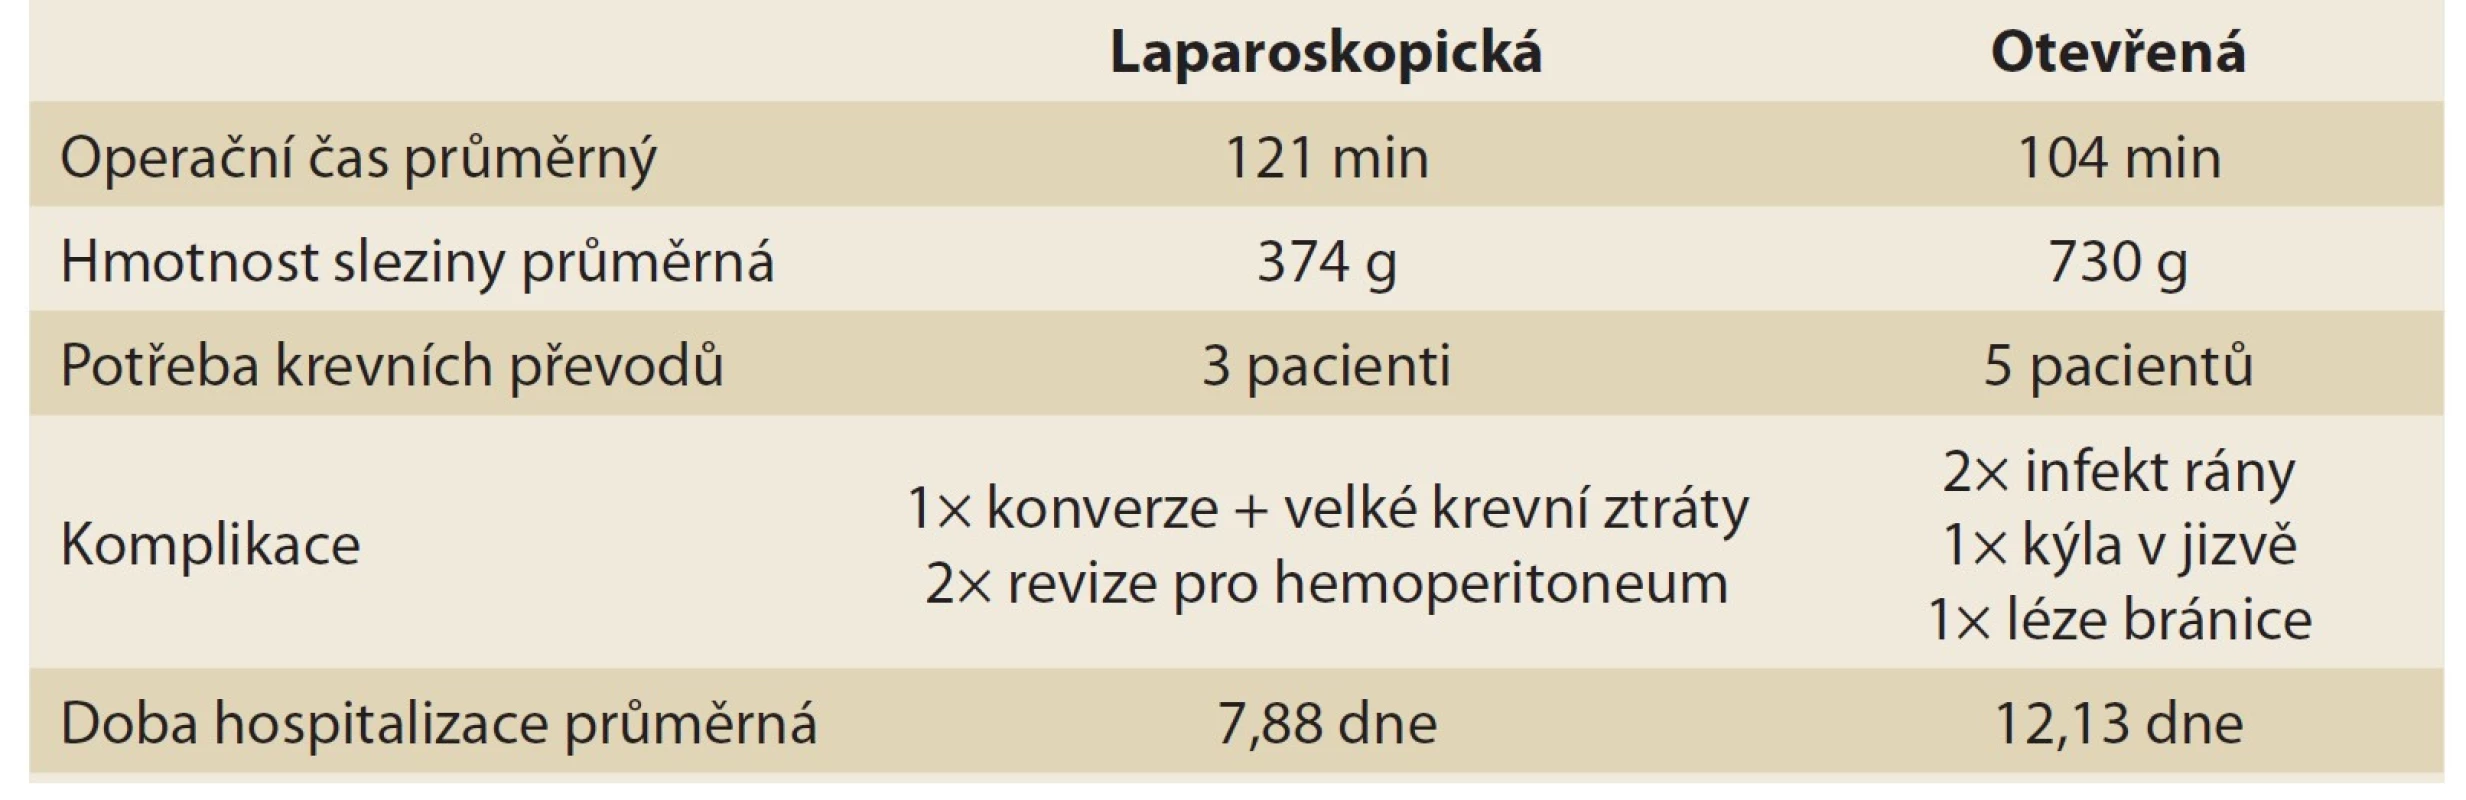 Porovnání laparoskopické a klasické splenektomie.<br>
Tab. 2. Comparison of laparoscopic and open splenectomy.